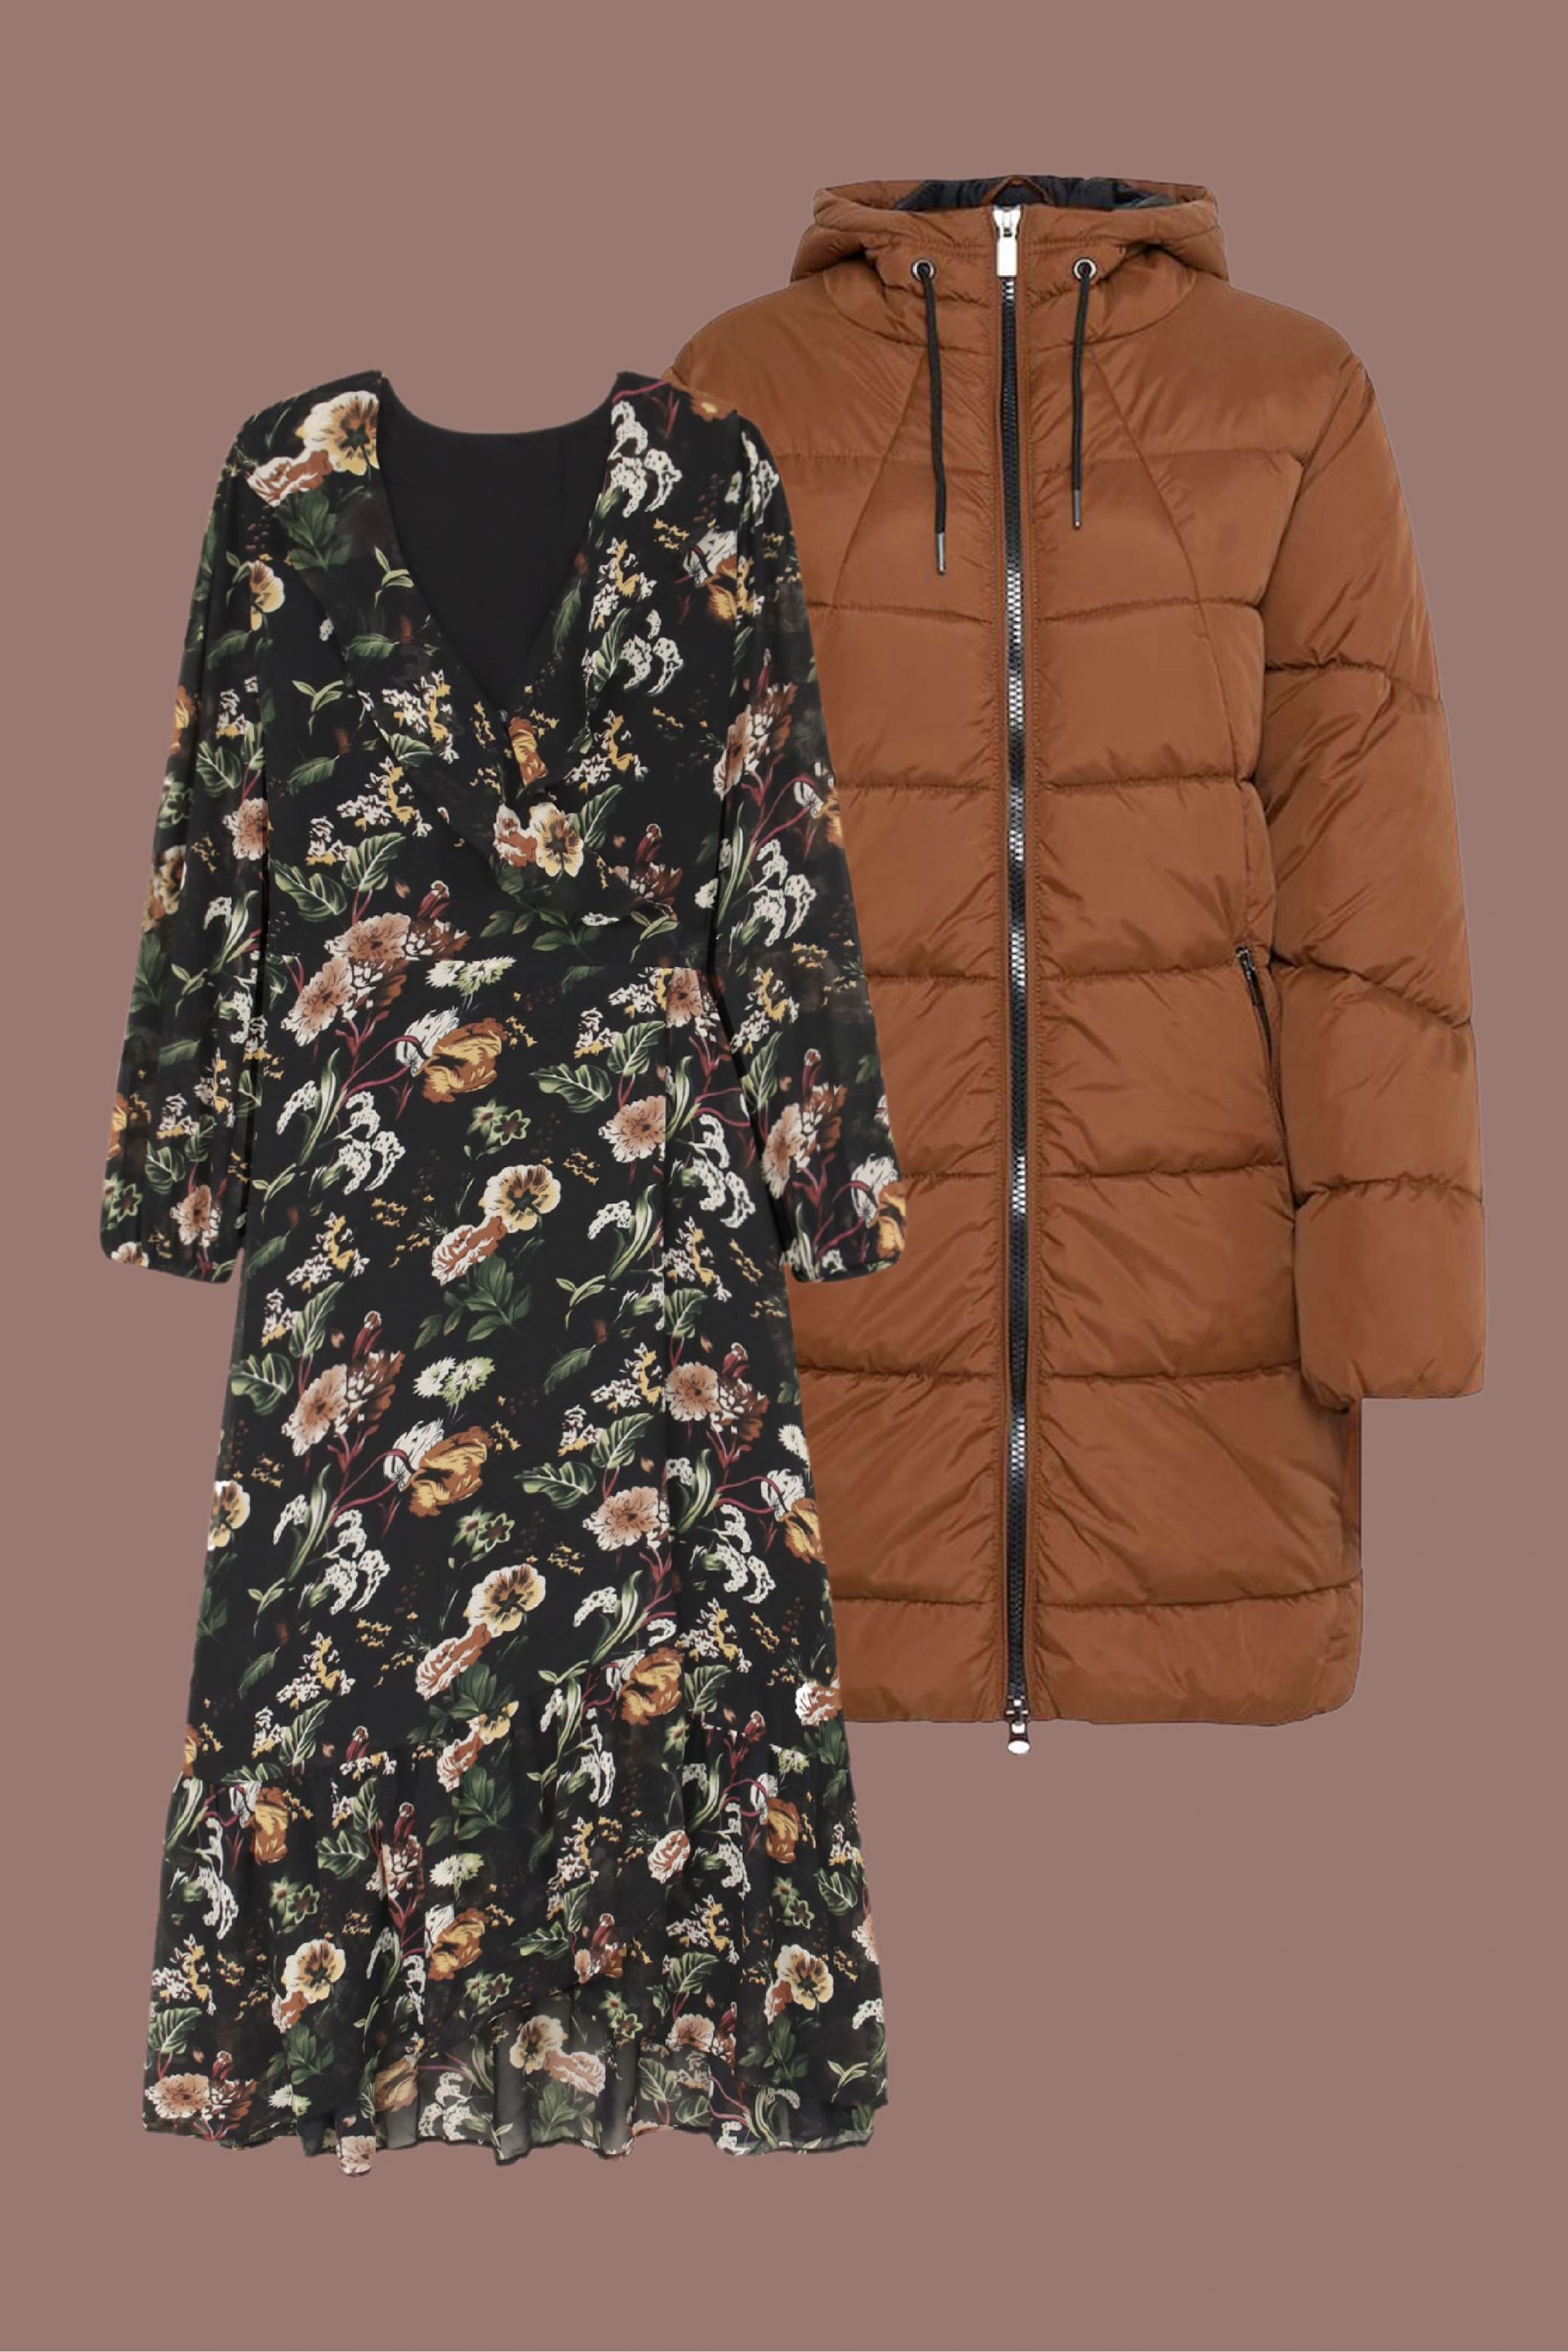 Explora o teu estilo mais trendy e boémio com um casaco de pluma